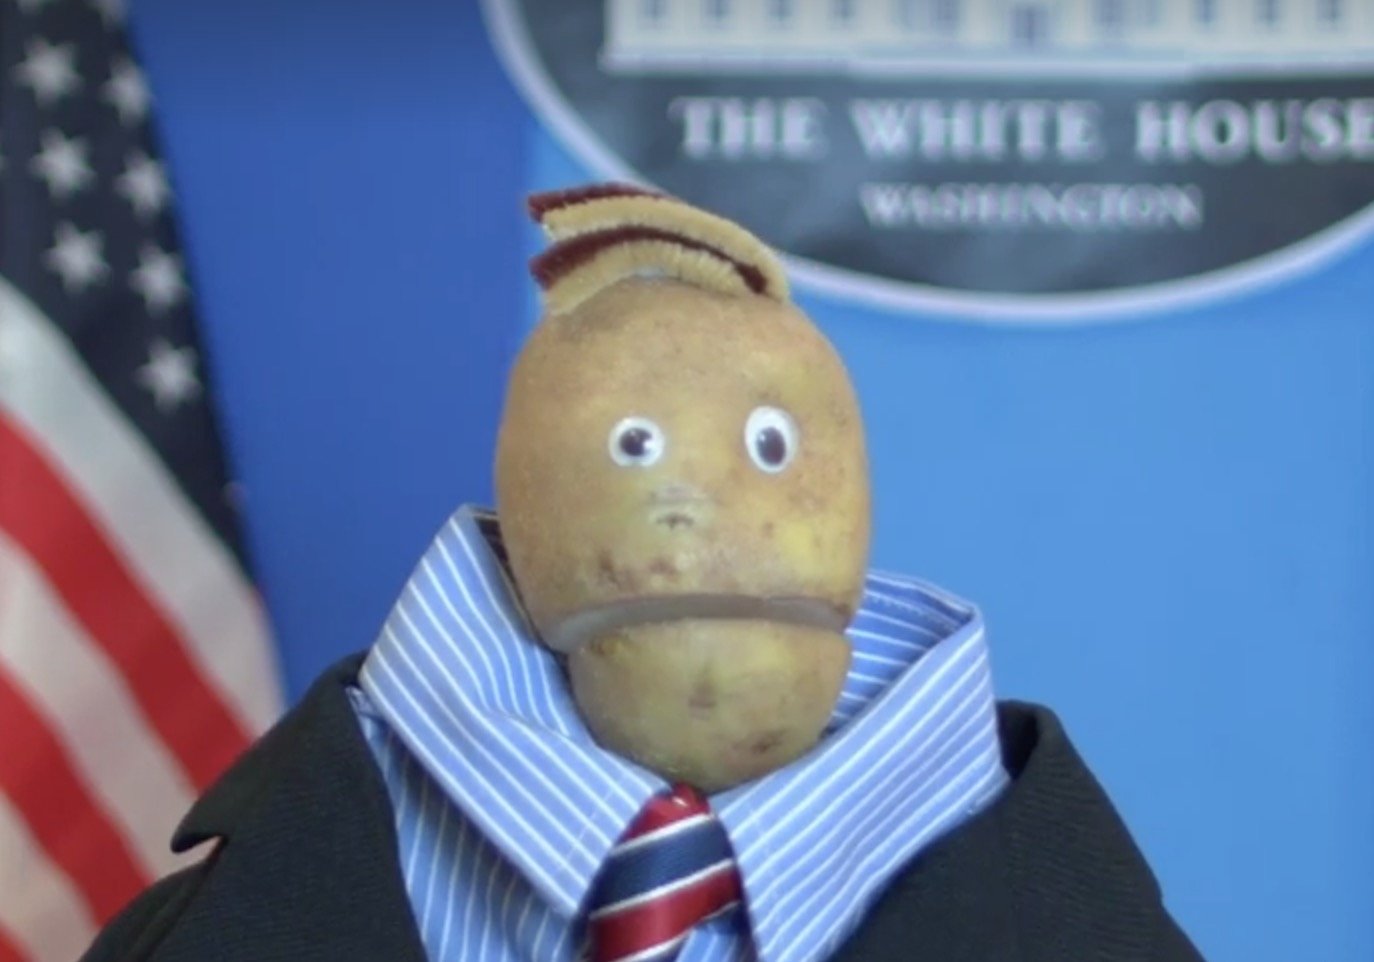 Sustituyen al portavoz de la Casa Blanca por una patata parlante